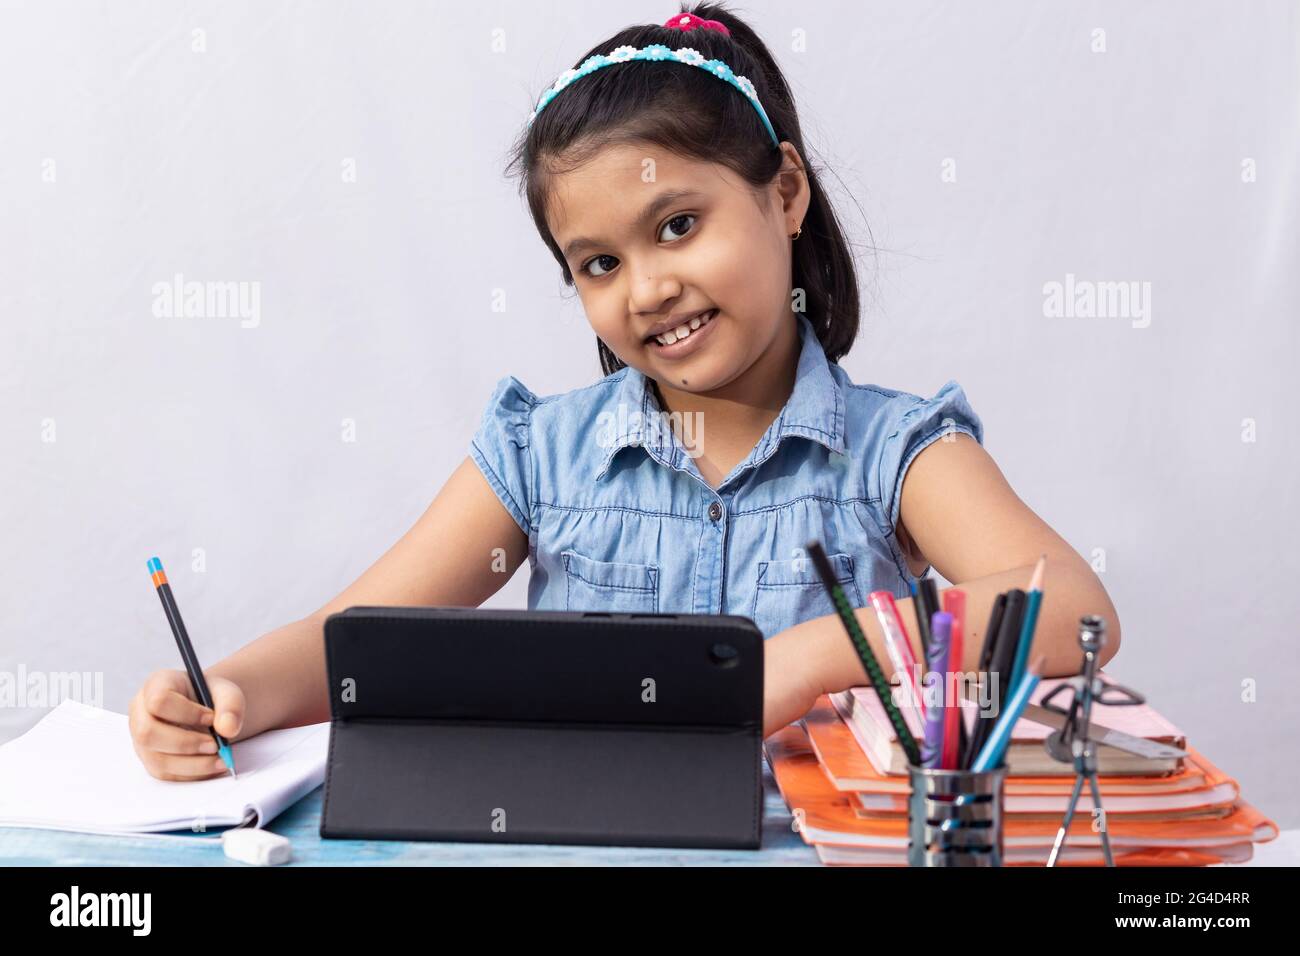 Ein hübsches indisches Mädchen, das während des Online-Kurses mit Tablet auf weißem Hintergrund die Kamera anschaut Stockfoto